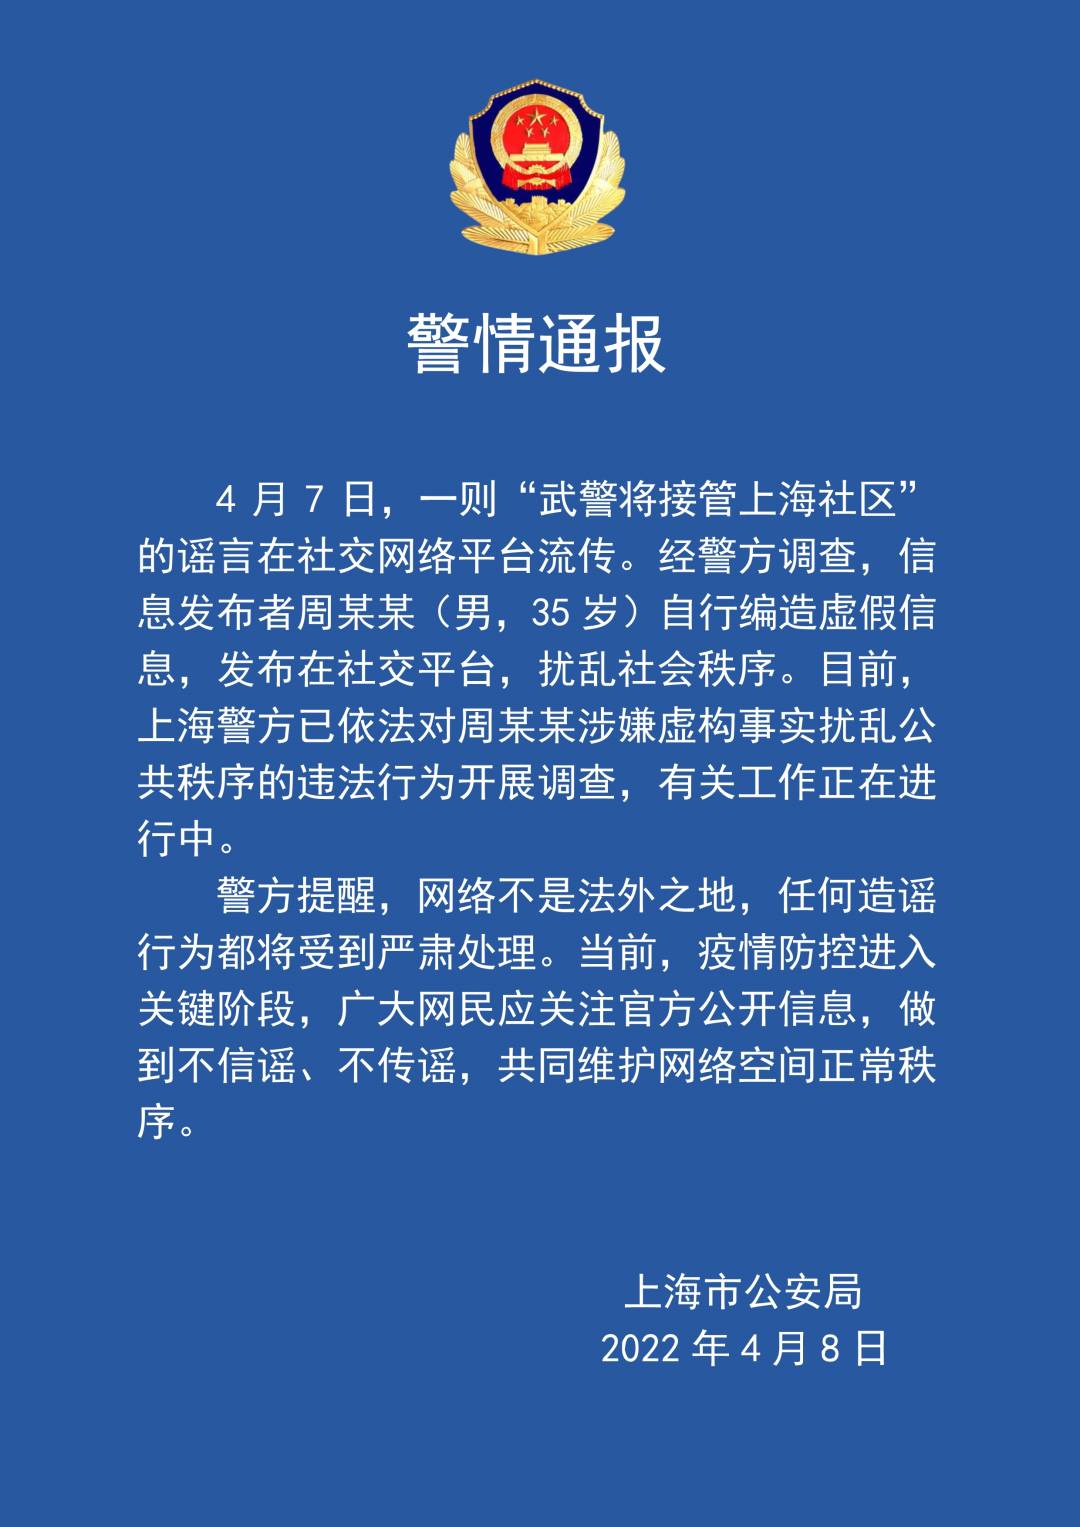 男人造谣“武警将经受上海社区”，已被警方观测